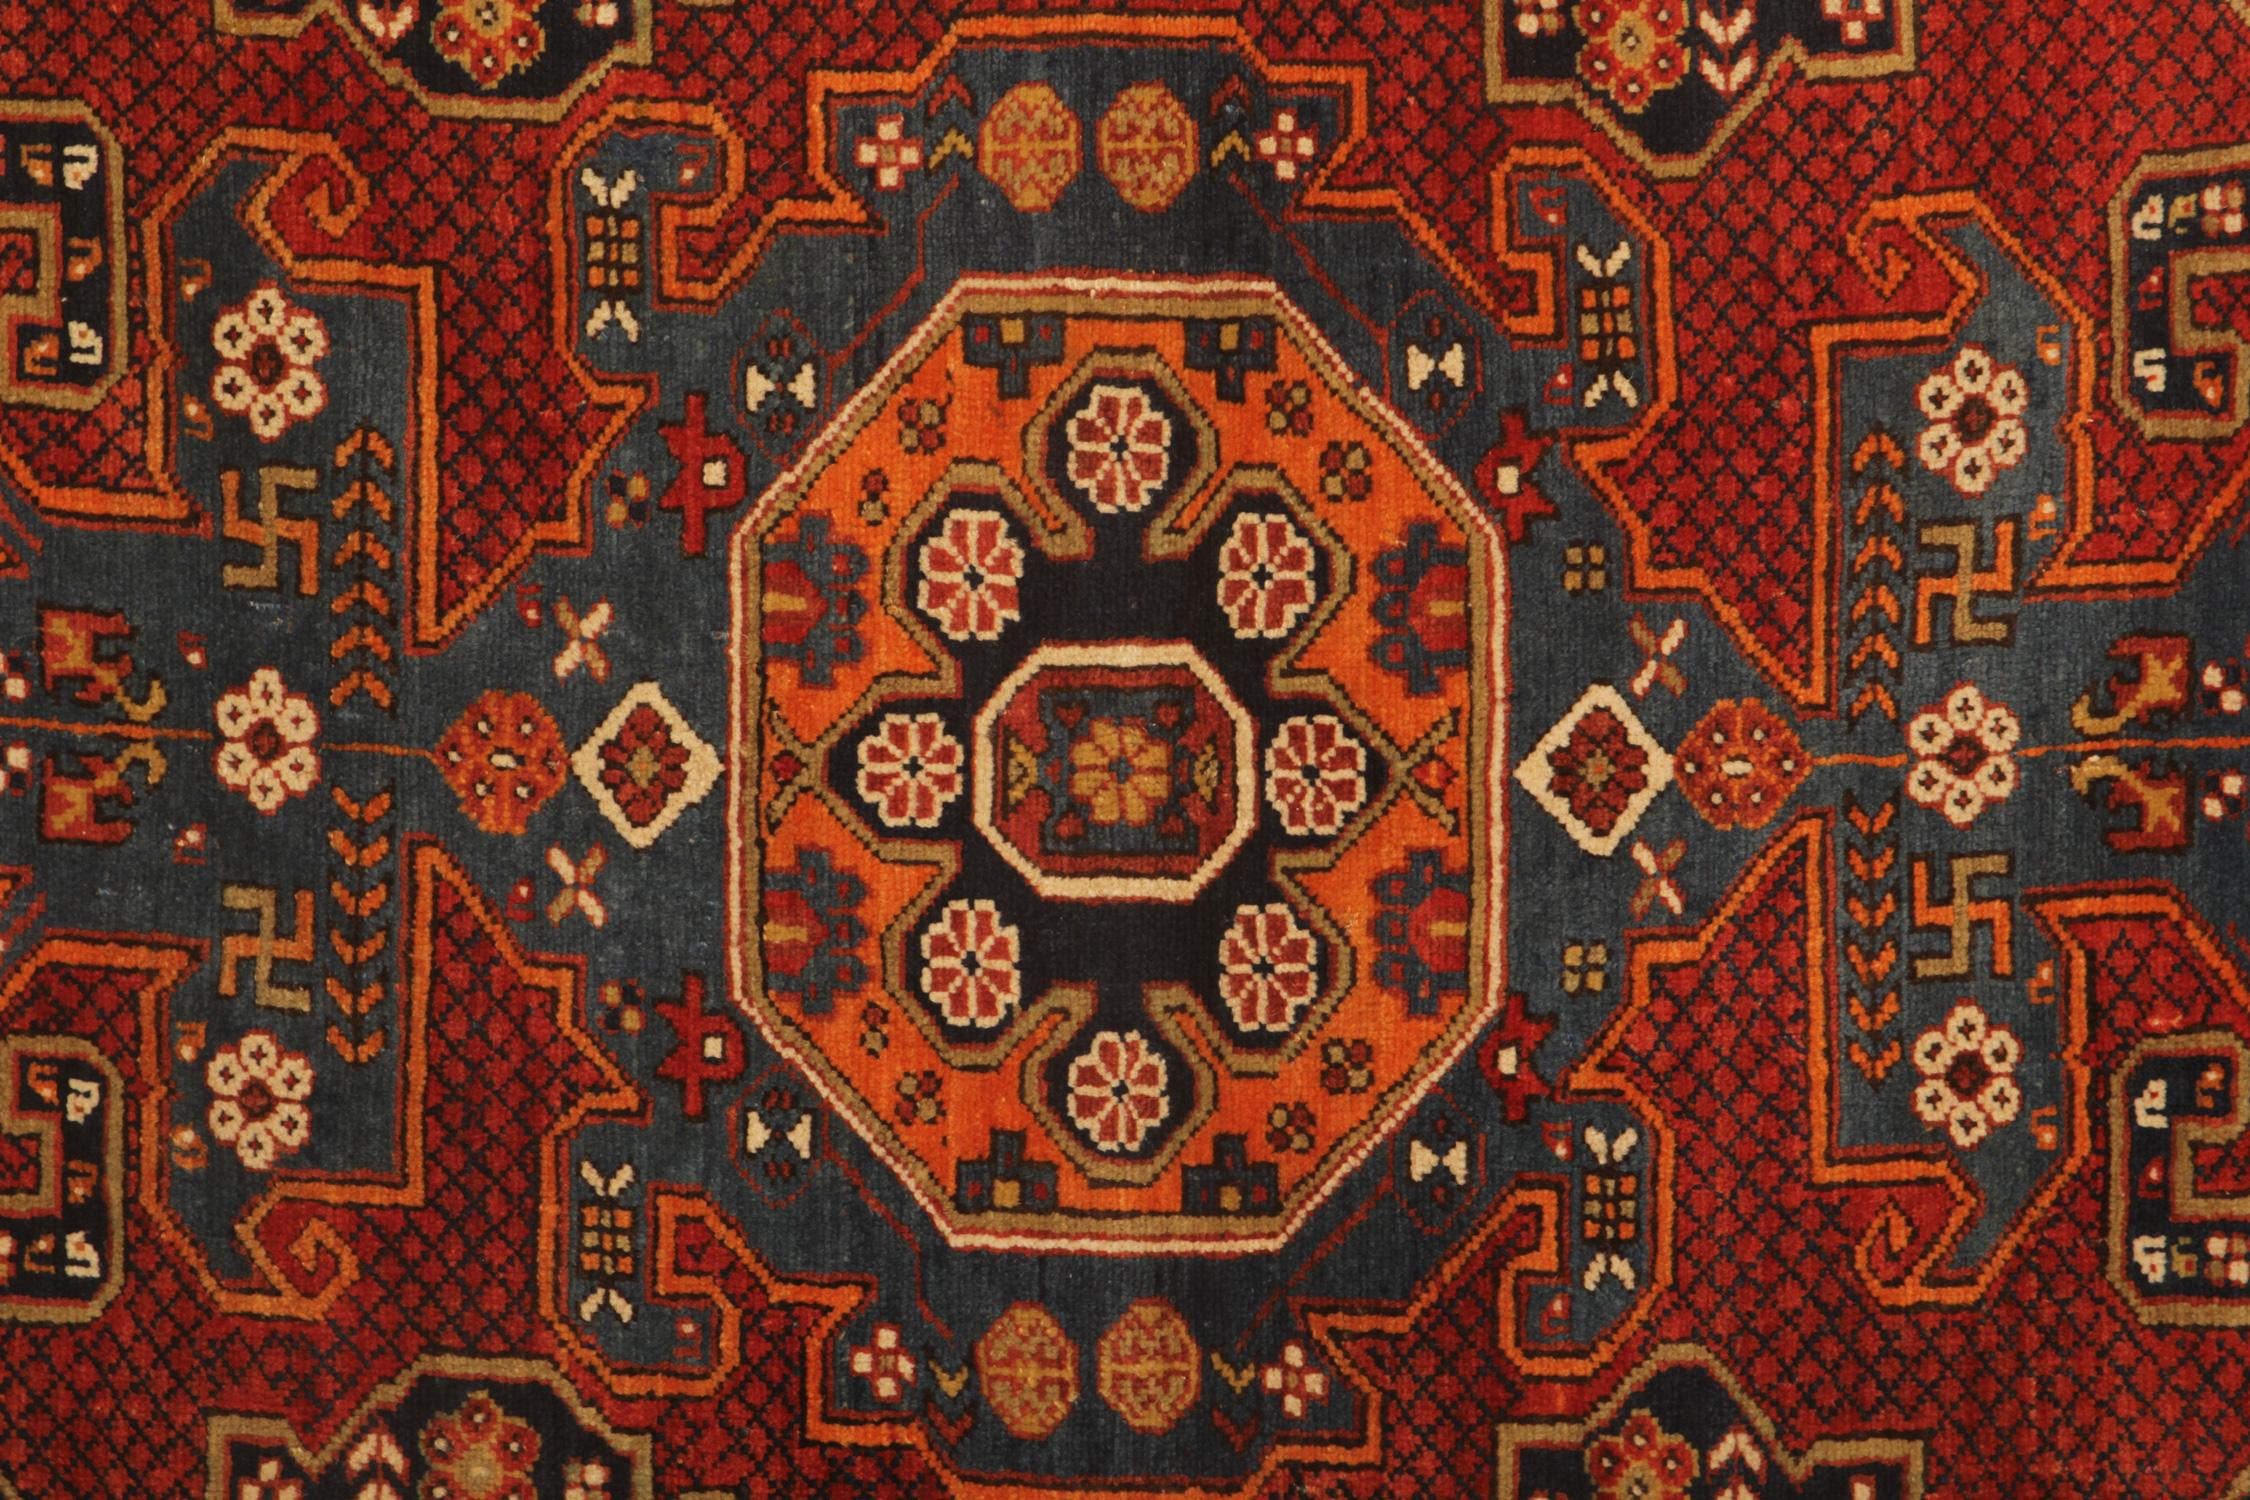 Un excellent exemple de tissage traditionnel de tapis caucasien de la région de Shirvan. Ces tapis à motifs Medallion Ground Design/One peuvent être le meilleur élément de décoration intérieure pour donner de la chaleur à l'environnement, car ce